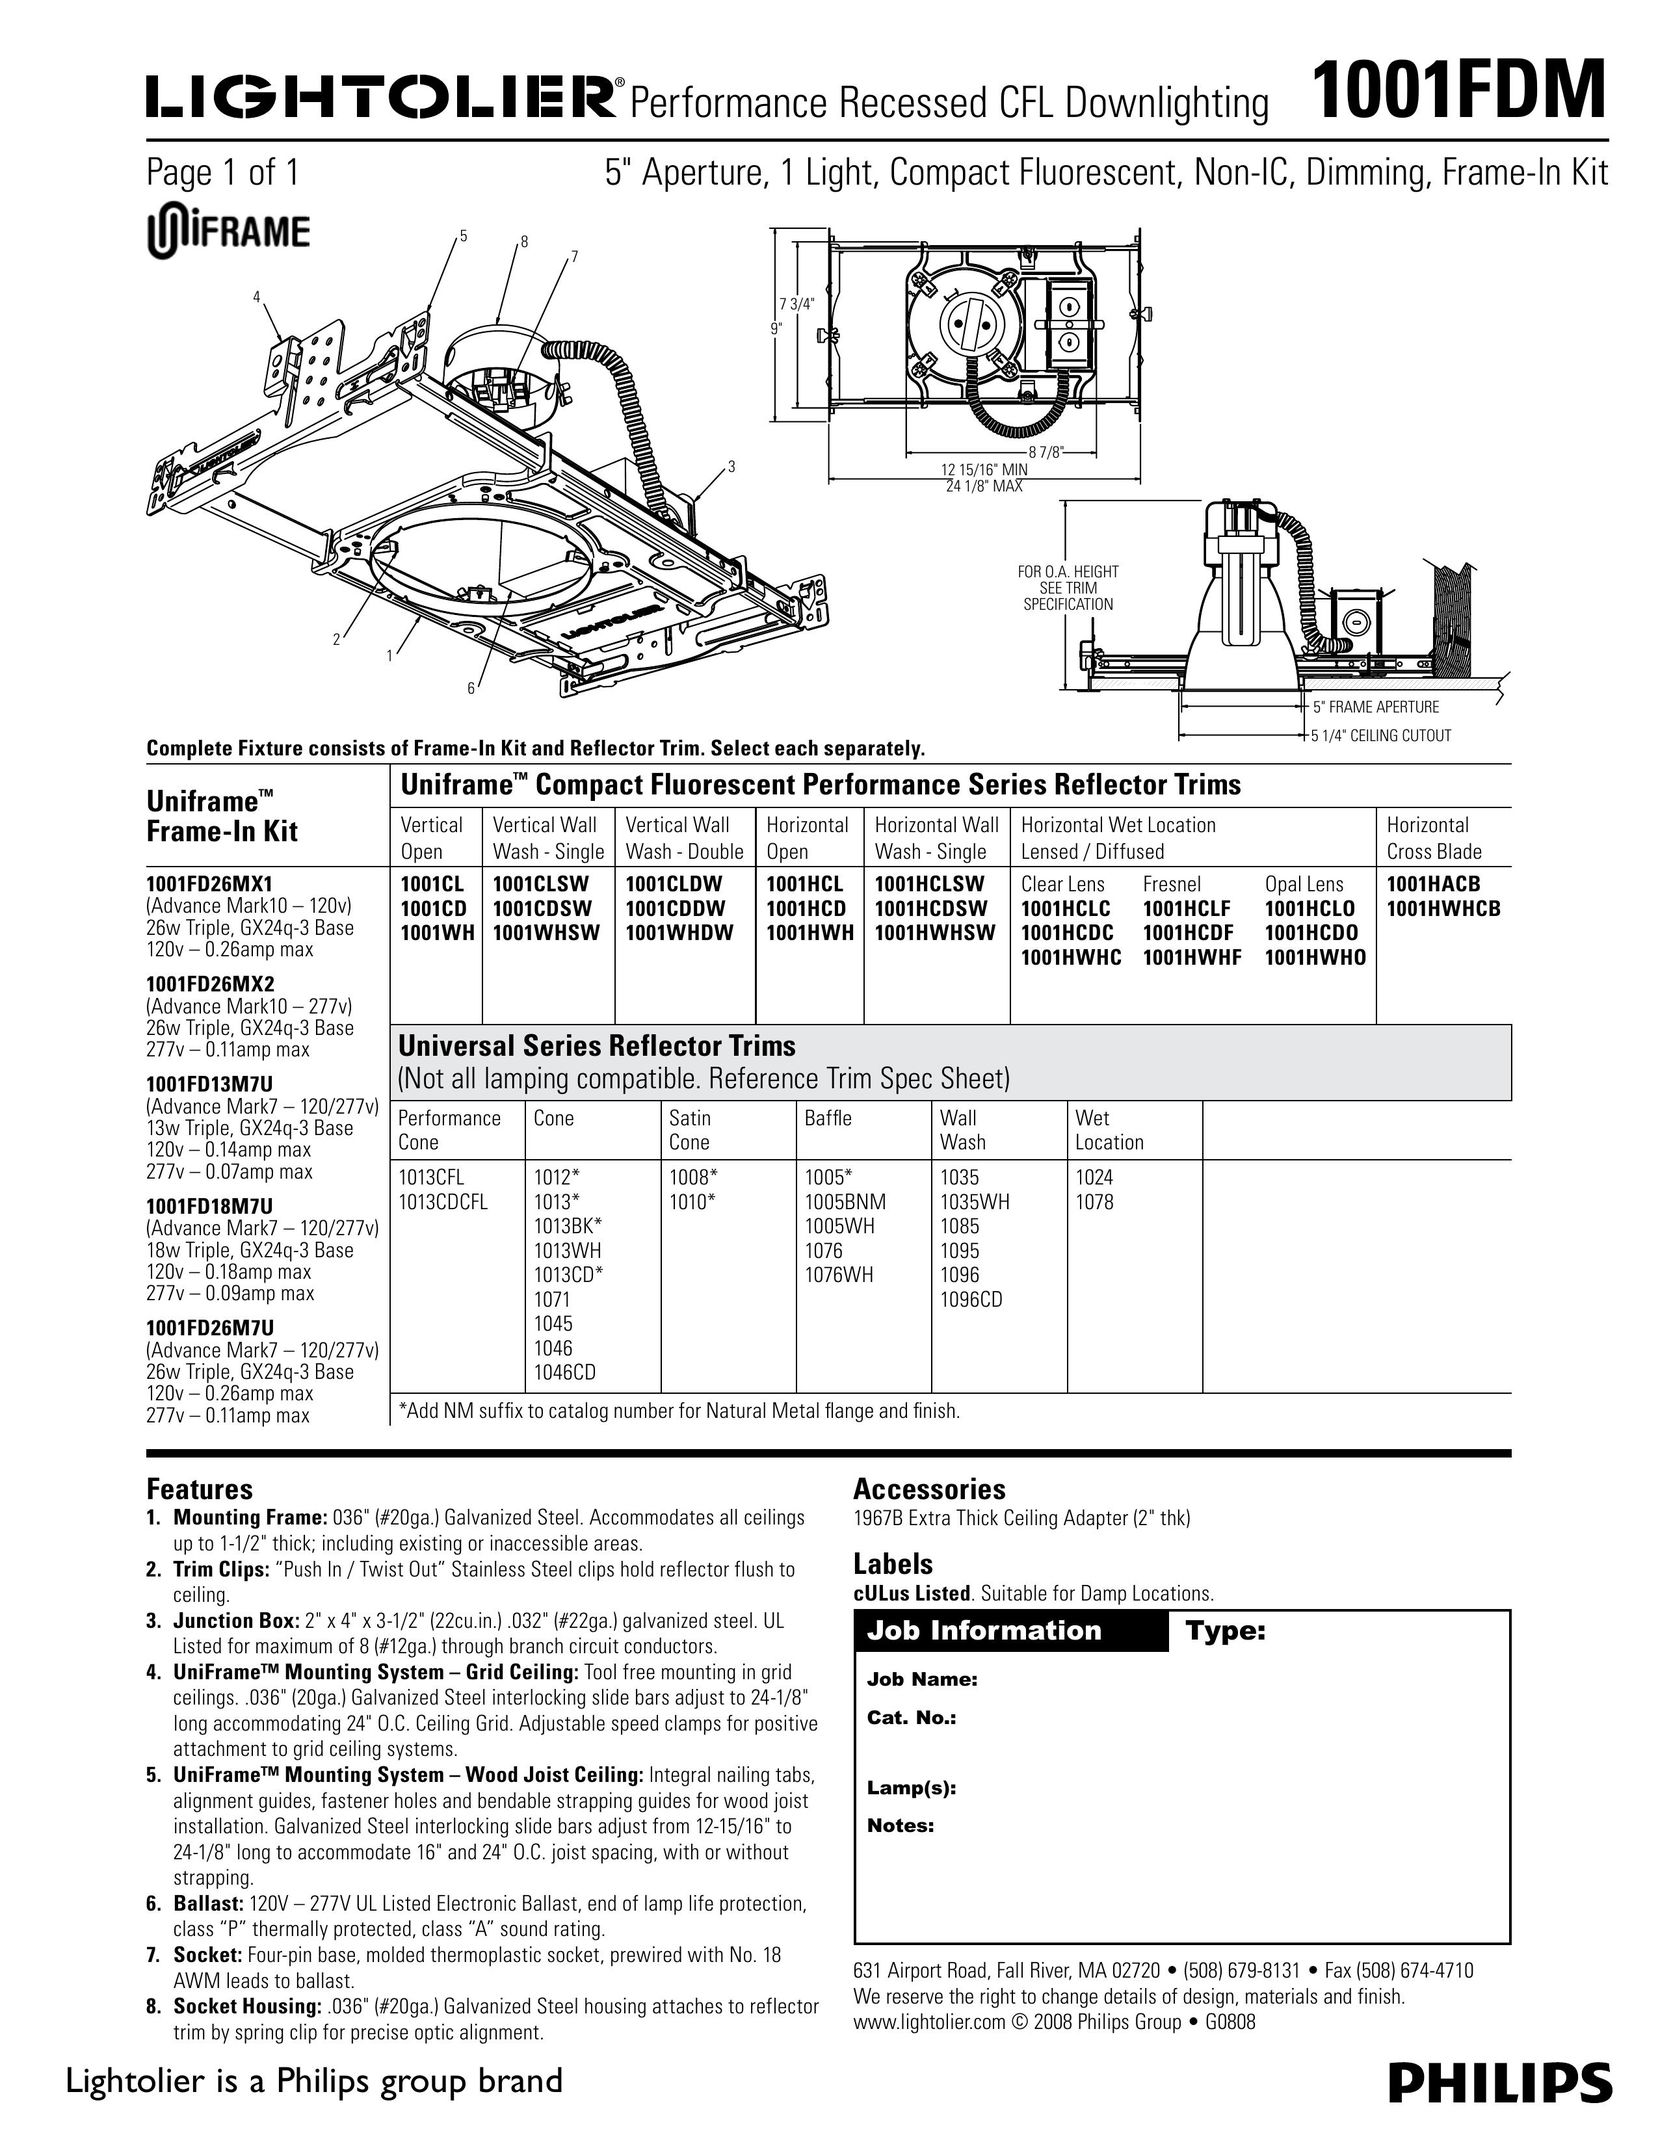 Lightolier 1001FDM Indoor Furnishings User Manual